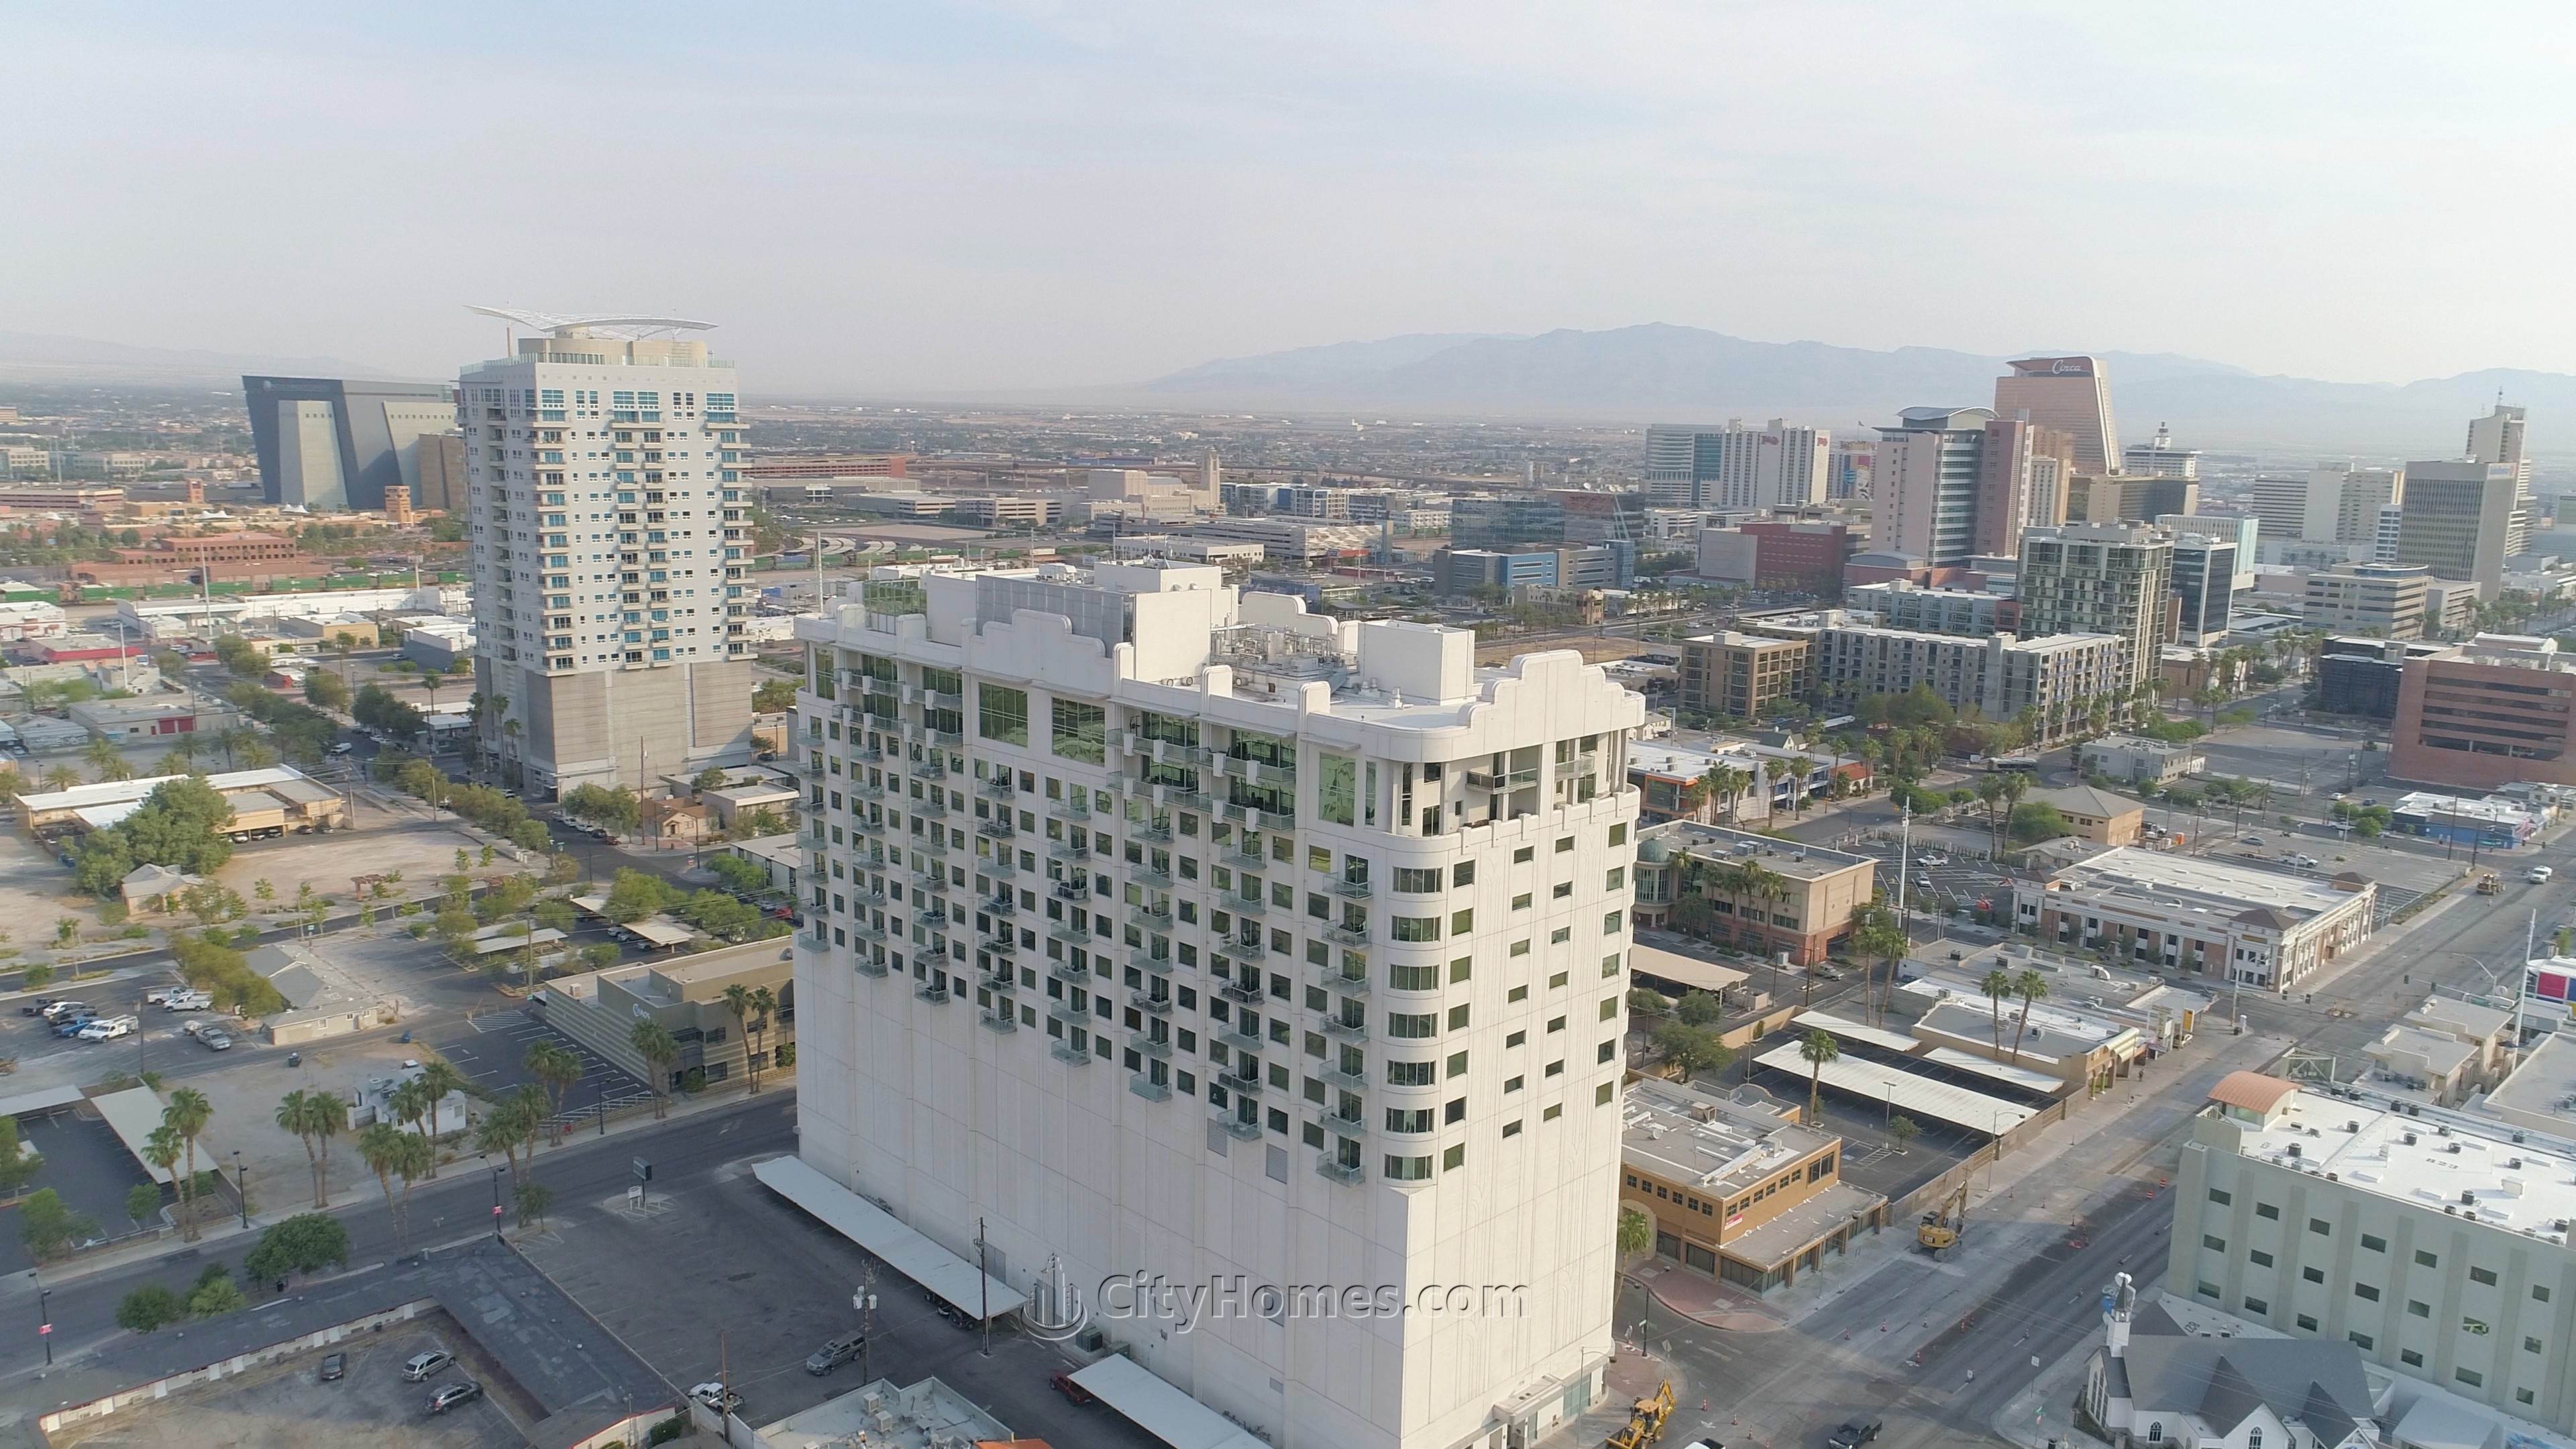 4. Soho Lofts bâtiment à 900 S Las Vegas Blvd, Las Vegas, NV 89101